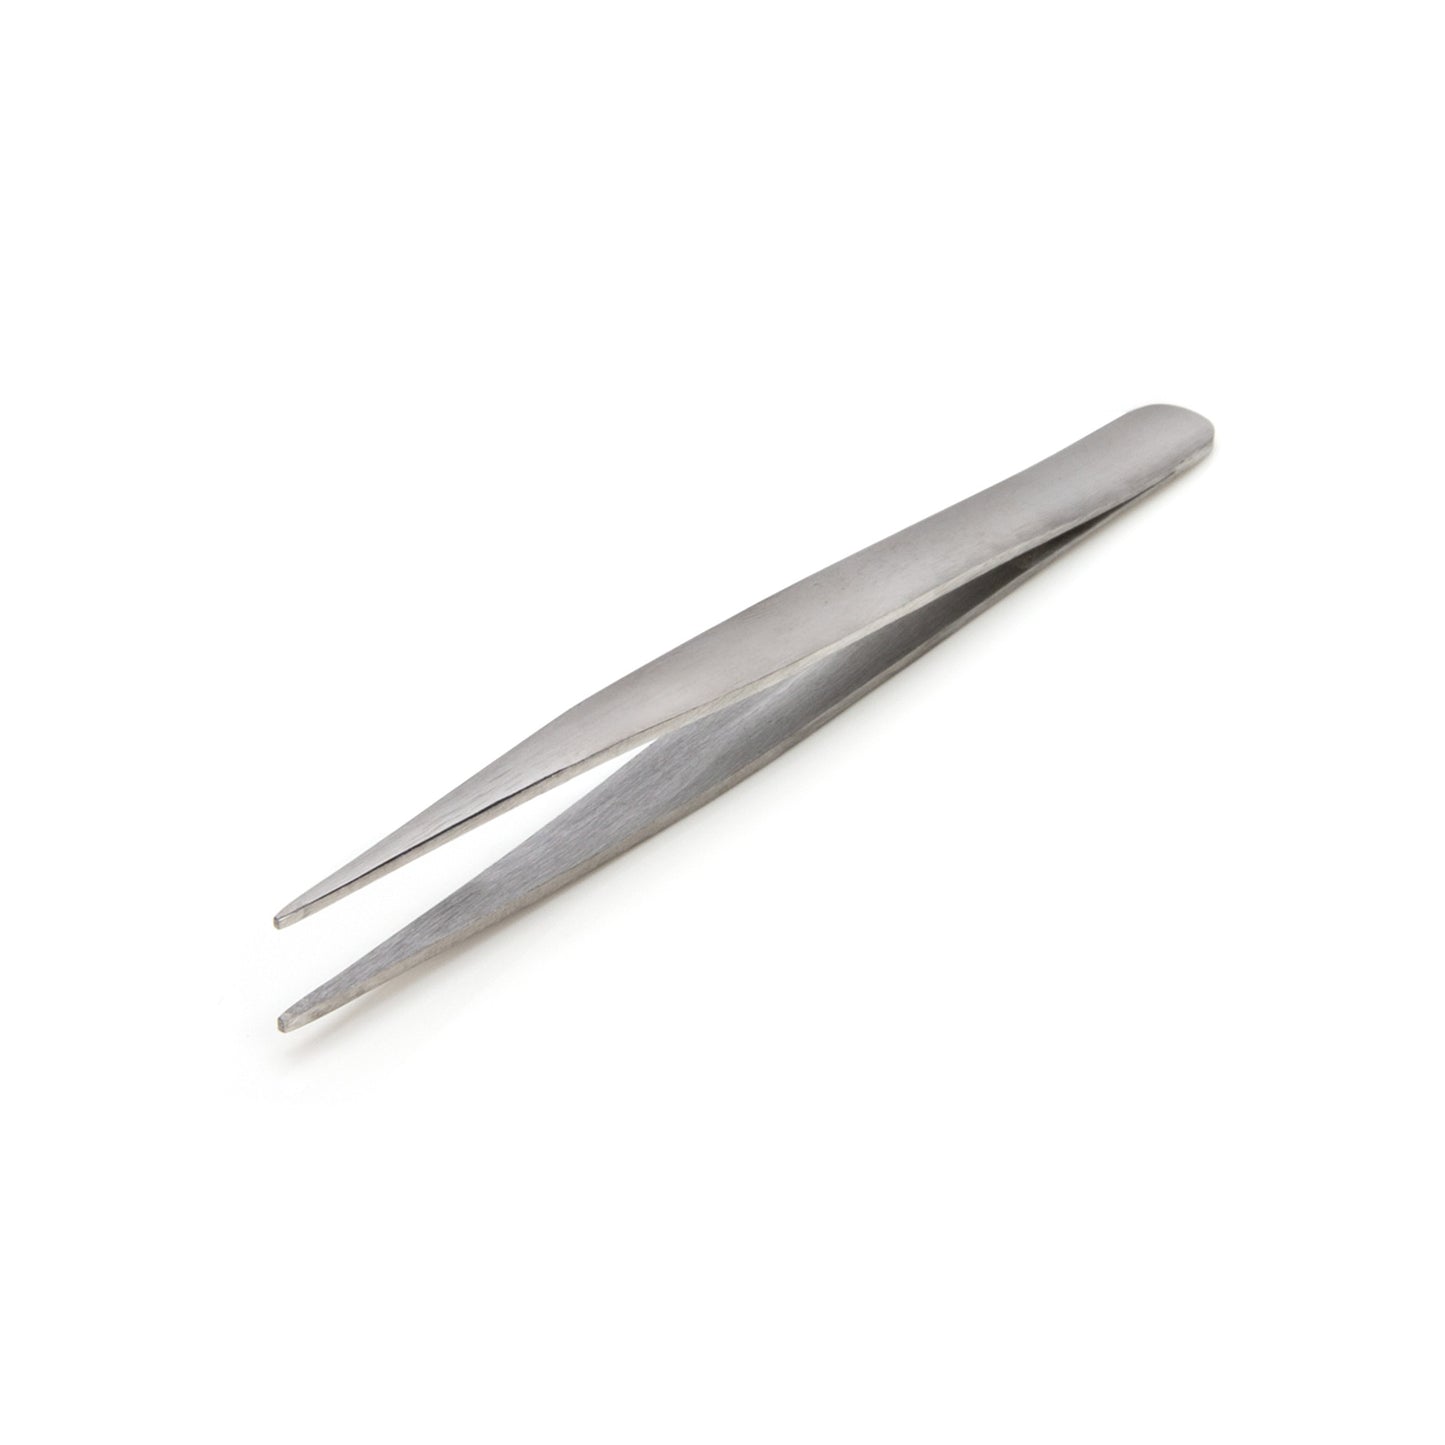 4.75-inch Straight Sharp Tip Utility Tweezer